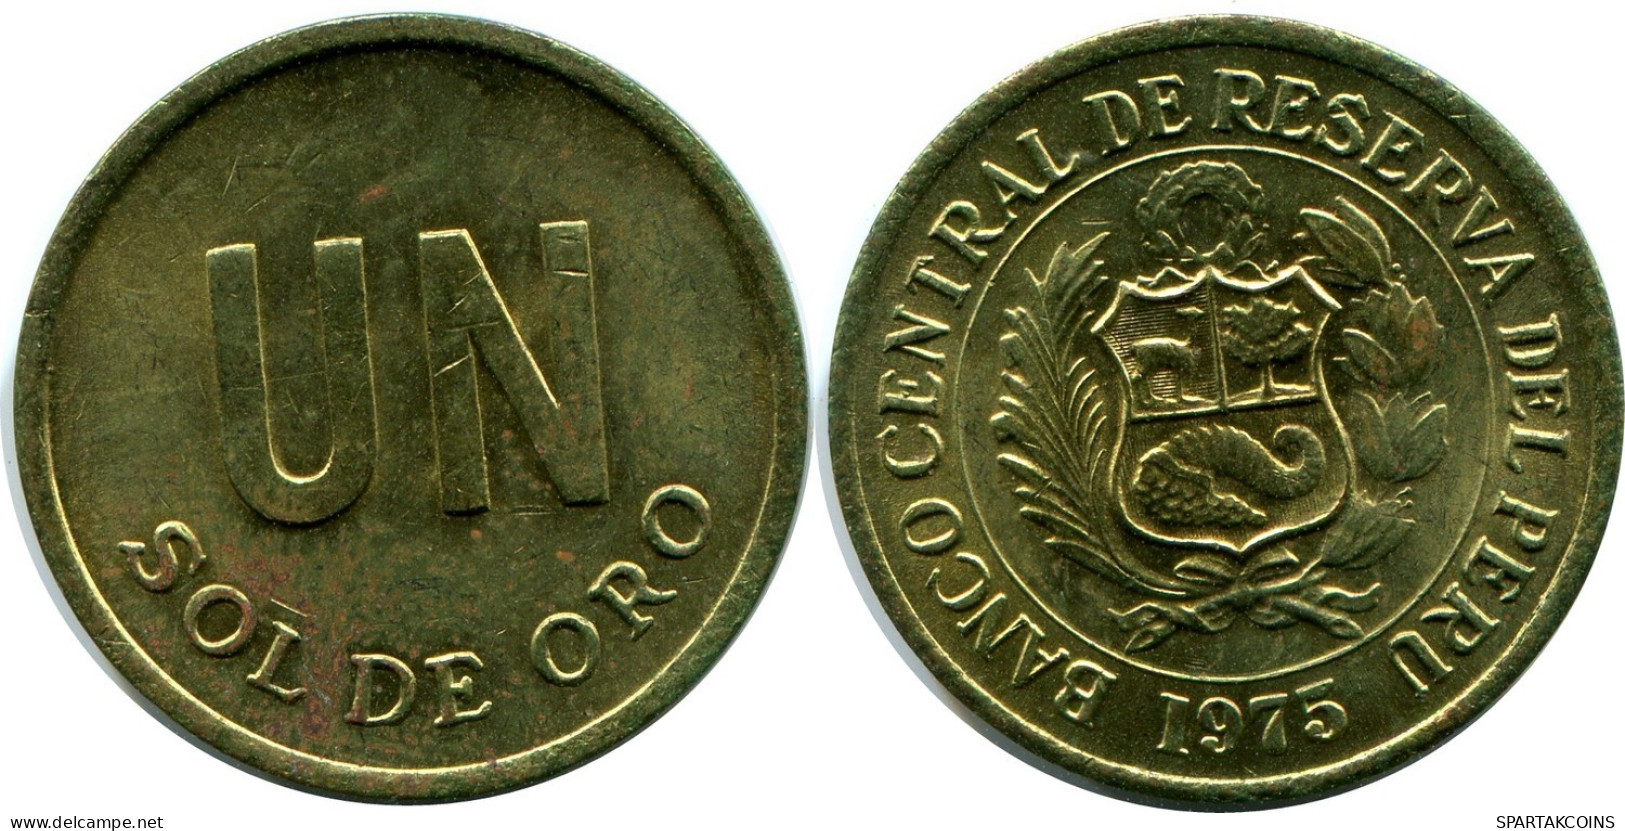 1 SOL 1975 PERUANO PERU Moneda #AZ077.E.A - Perú